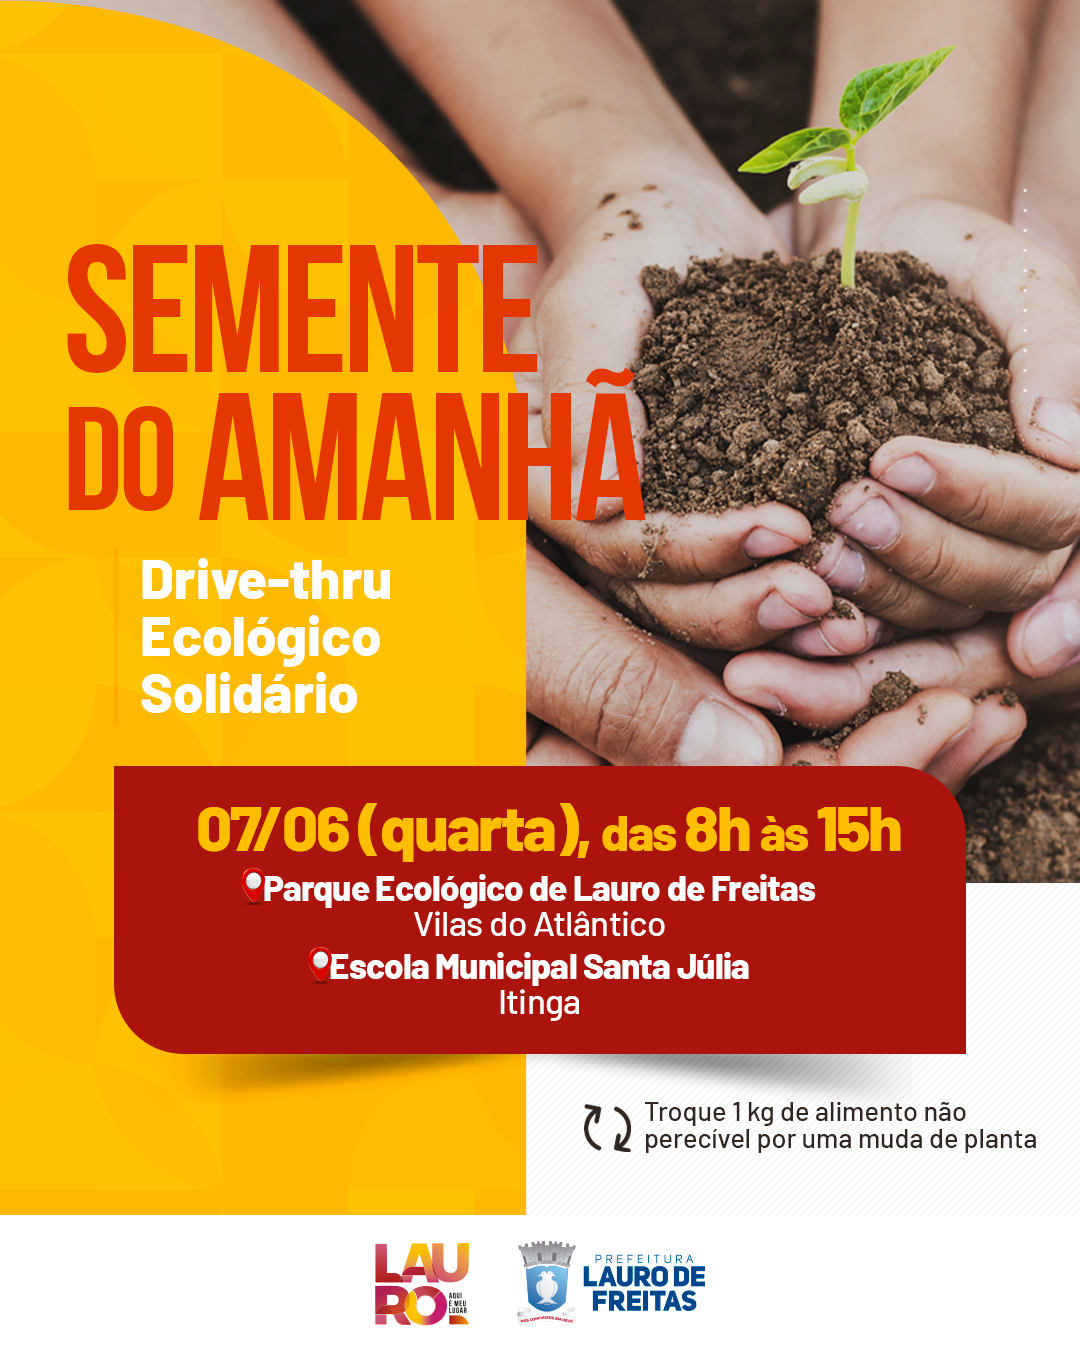  Drive thru solidário vai trocar alimentos por mudas de plantas em dois pontos de Lauro de Freitas na próxima quarta-feira (07)